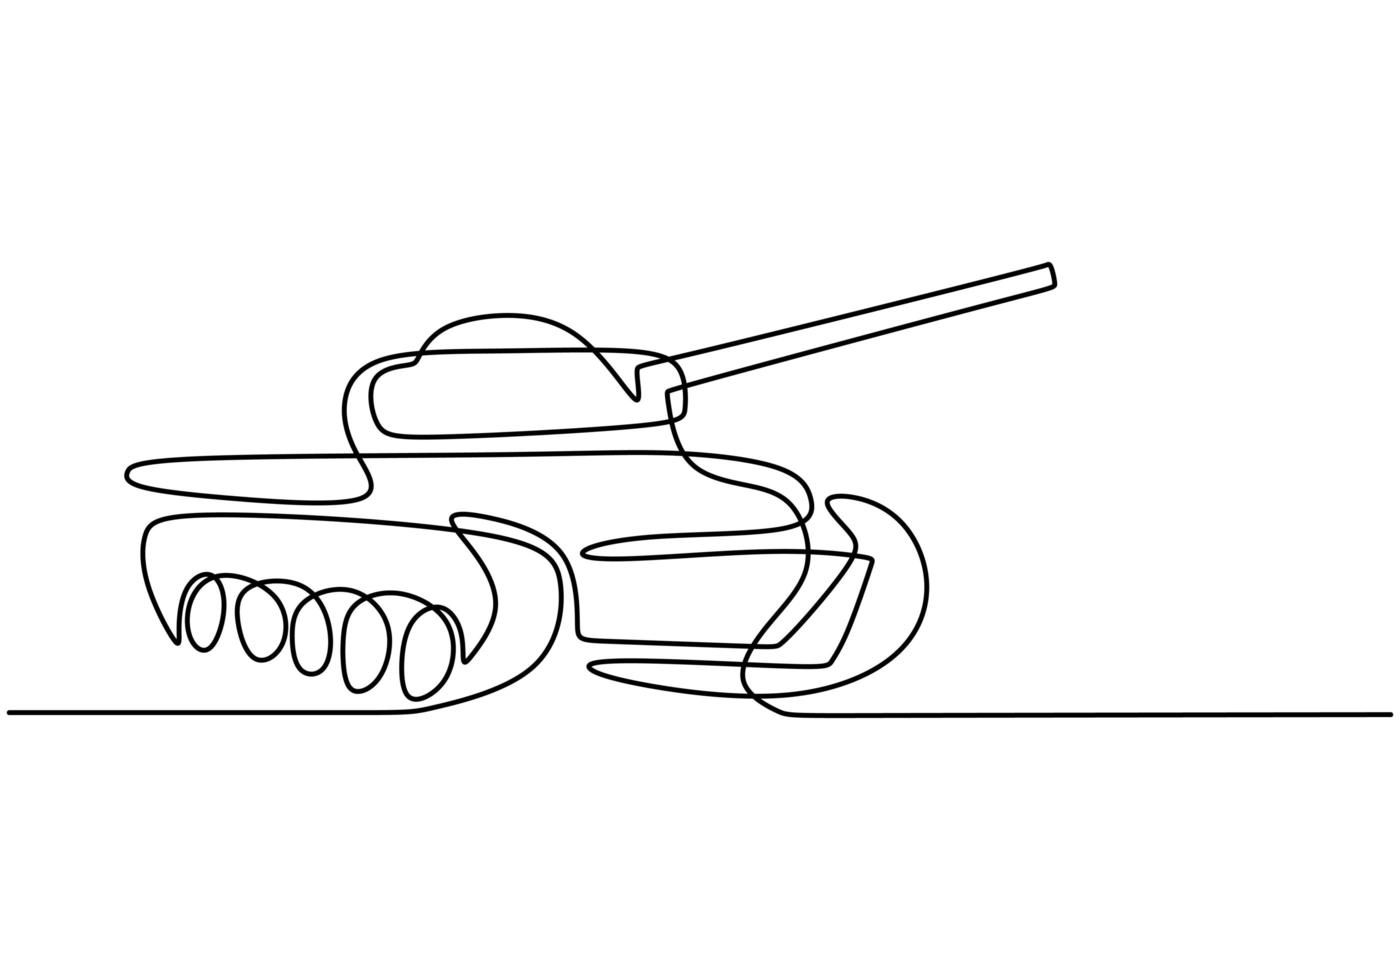 un disegno in linea continua del serbatoio. un veicolo da combattimento corazzato progettato per il combattimento e la guerra in prima linea. vettore